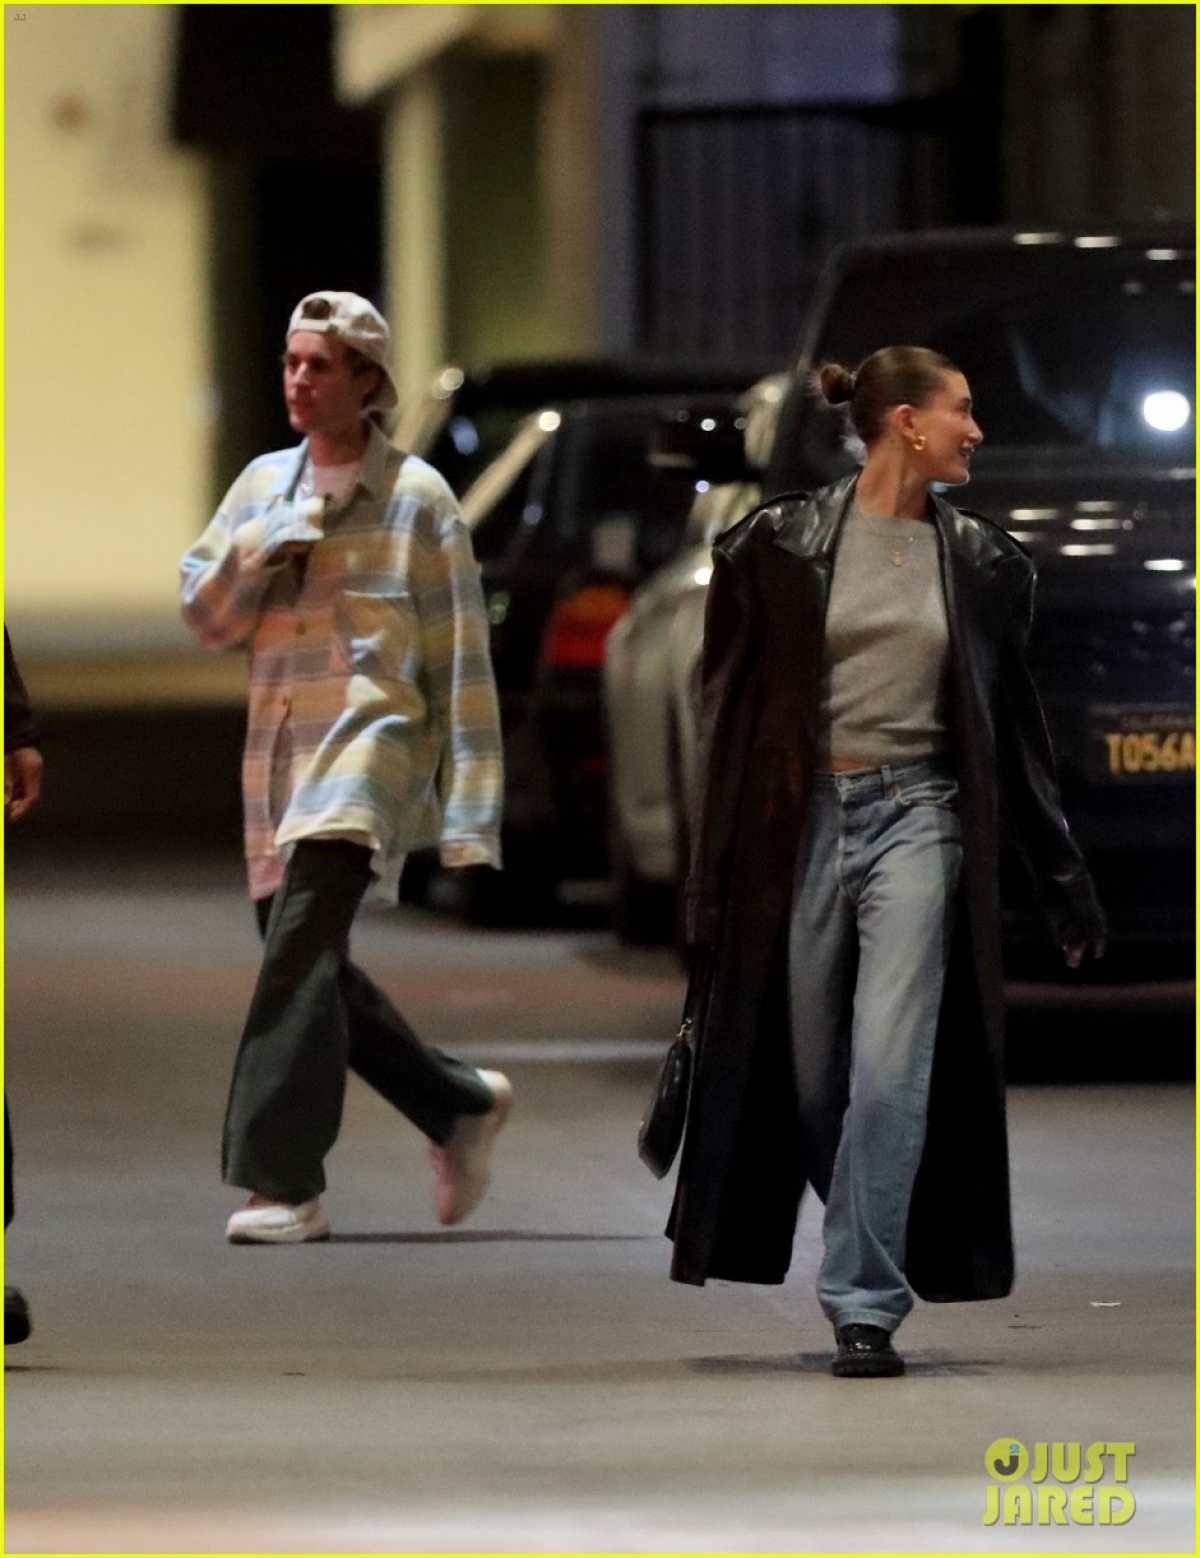 Justin Bieber mặc đồ luộm thuộm đi ăn tối cùng vợ - Ảnh 1.